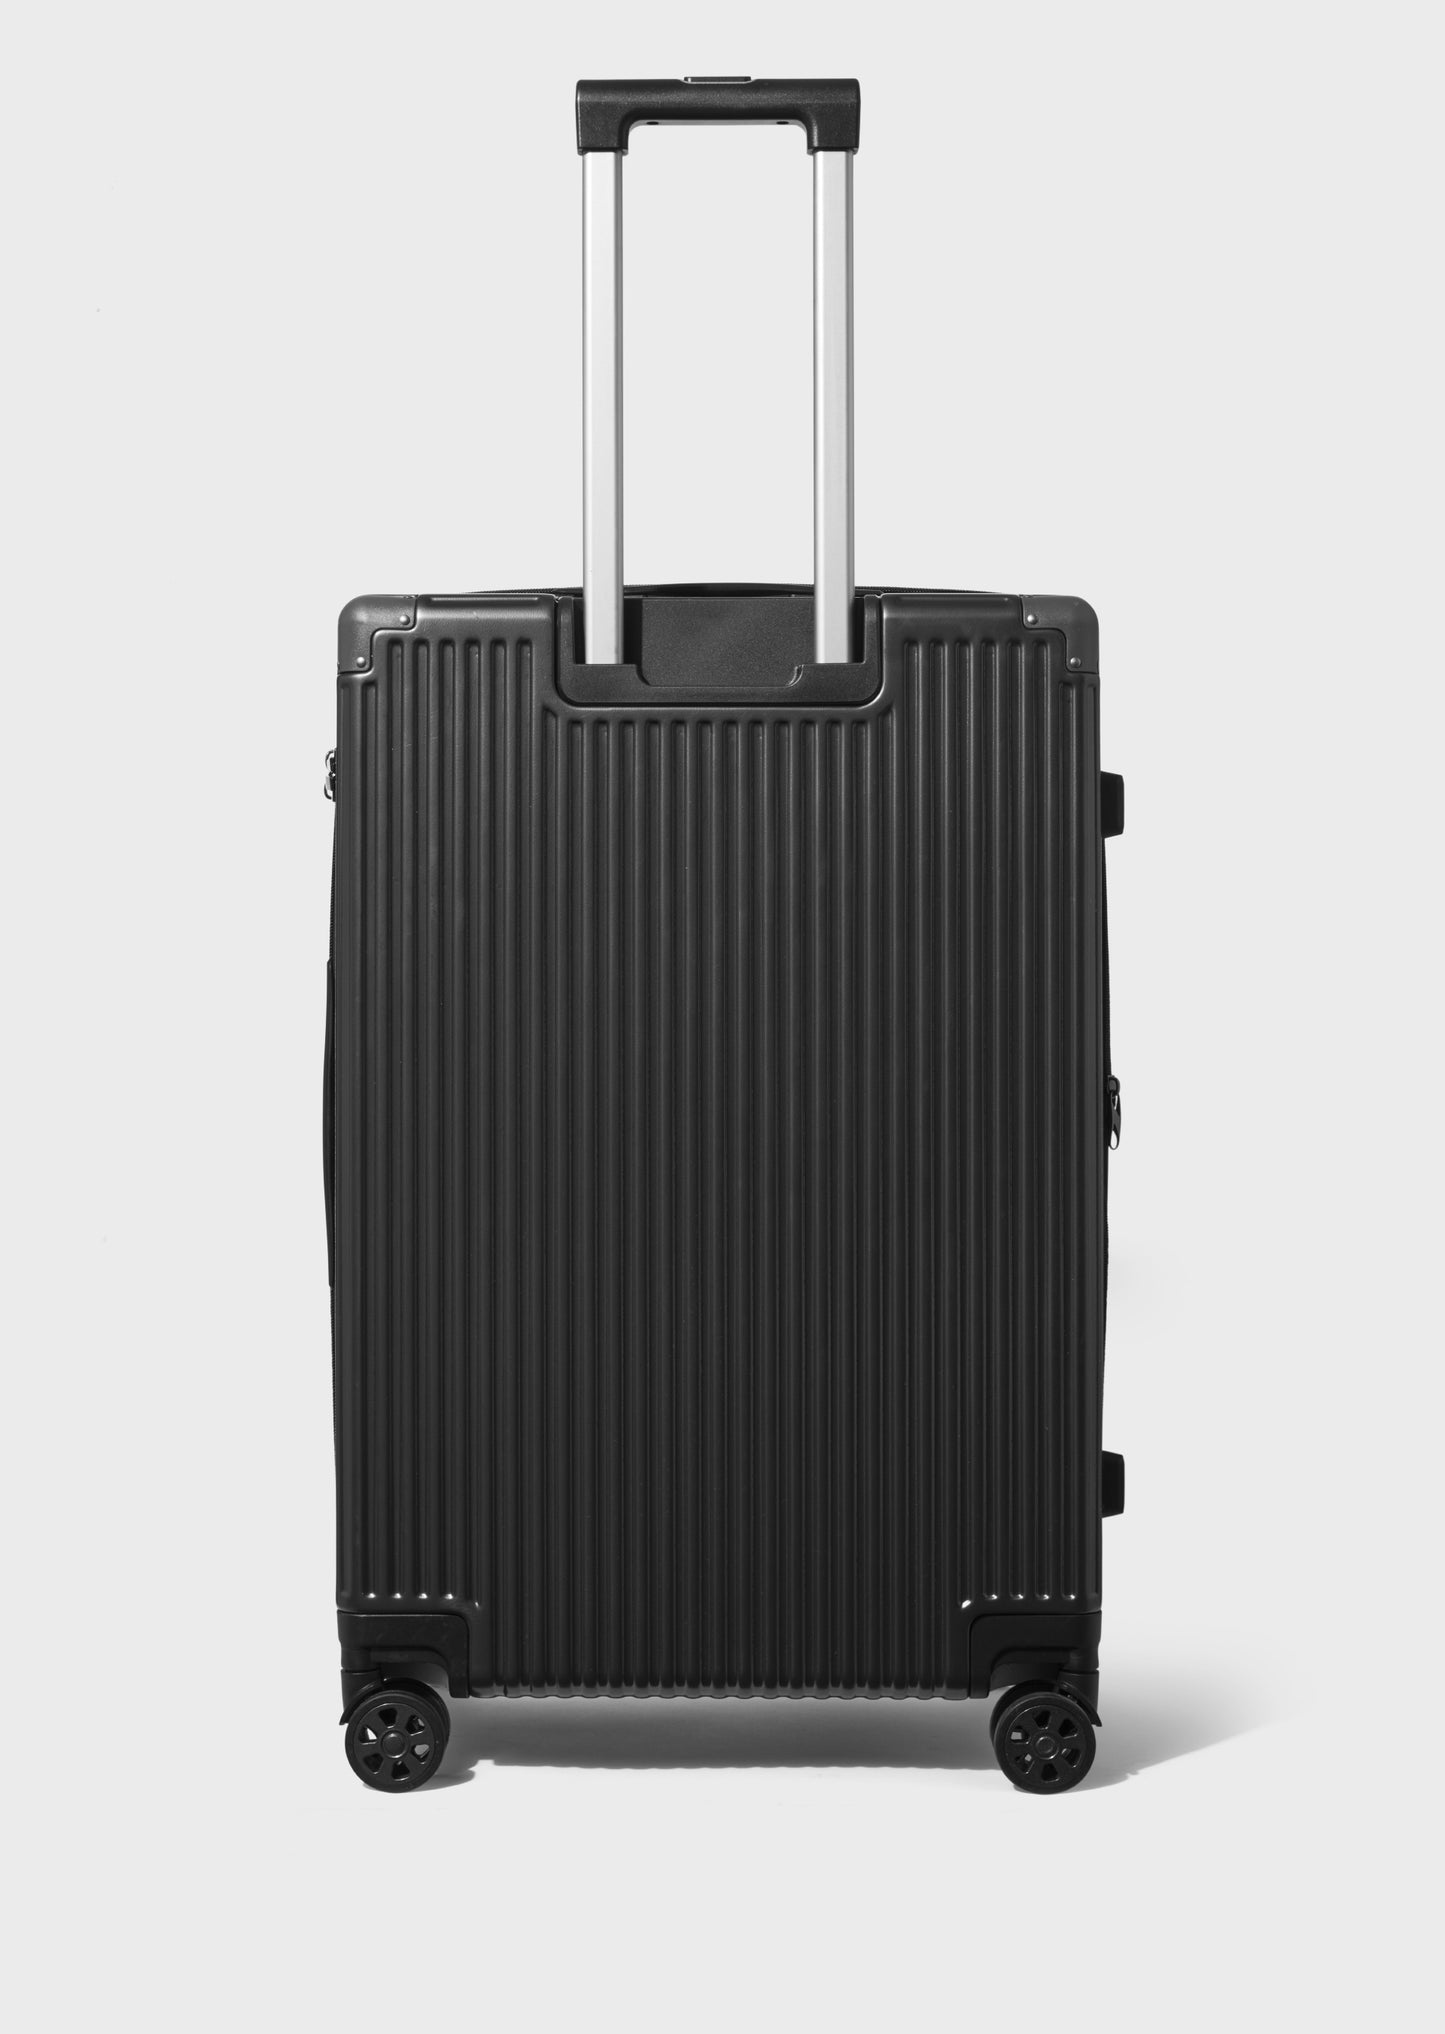 Stalham Black 26" Suitcase